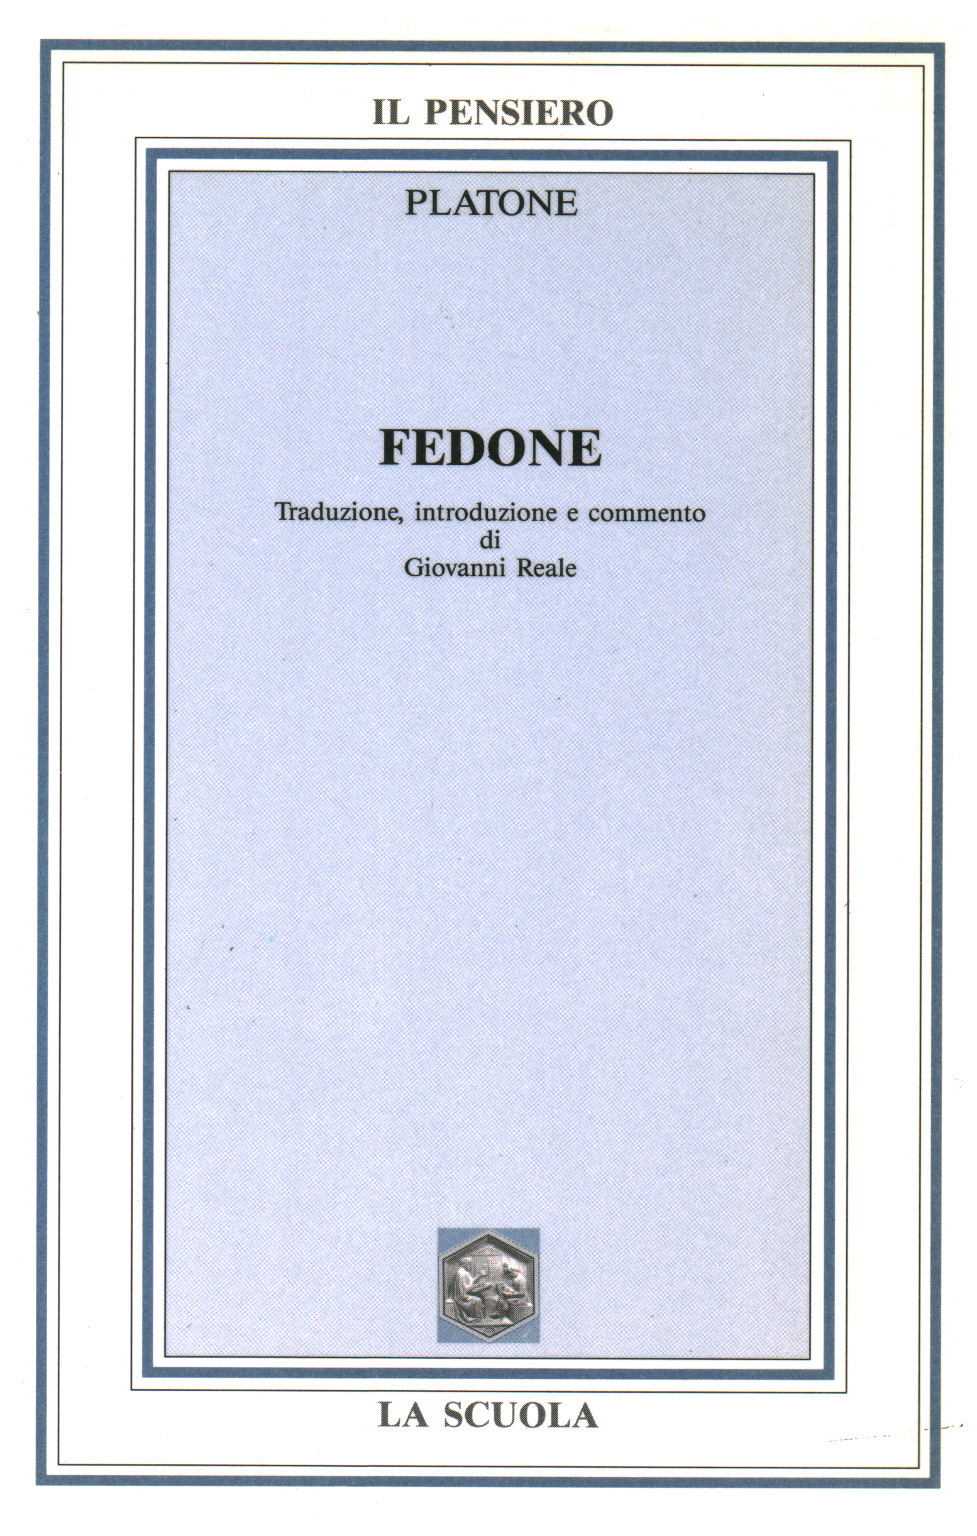 Fedone, s.a.